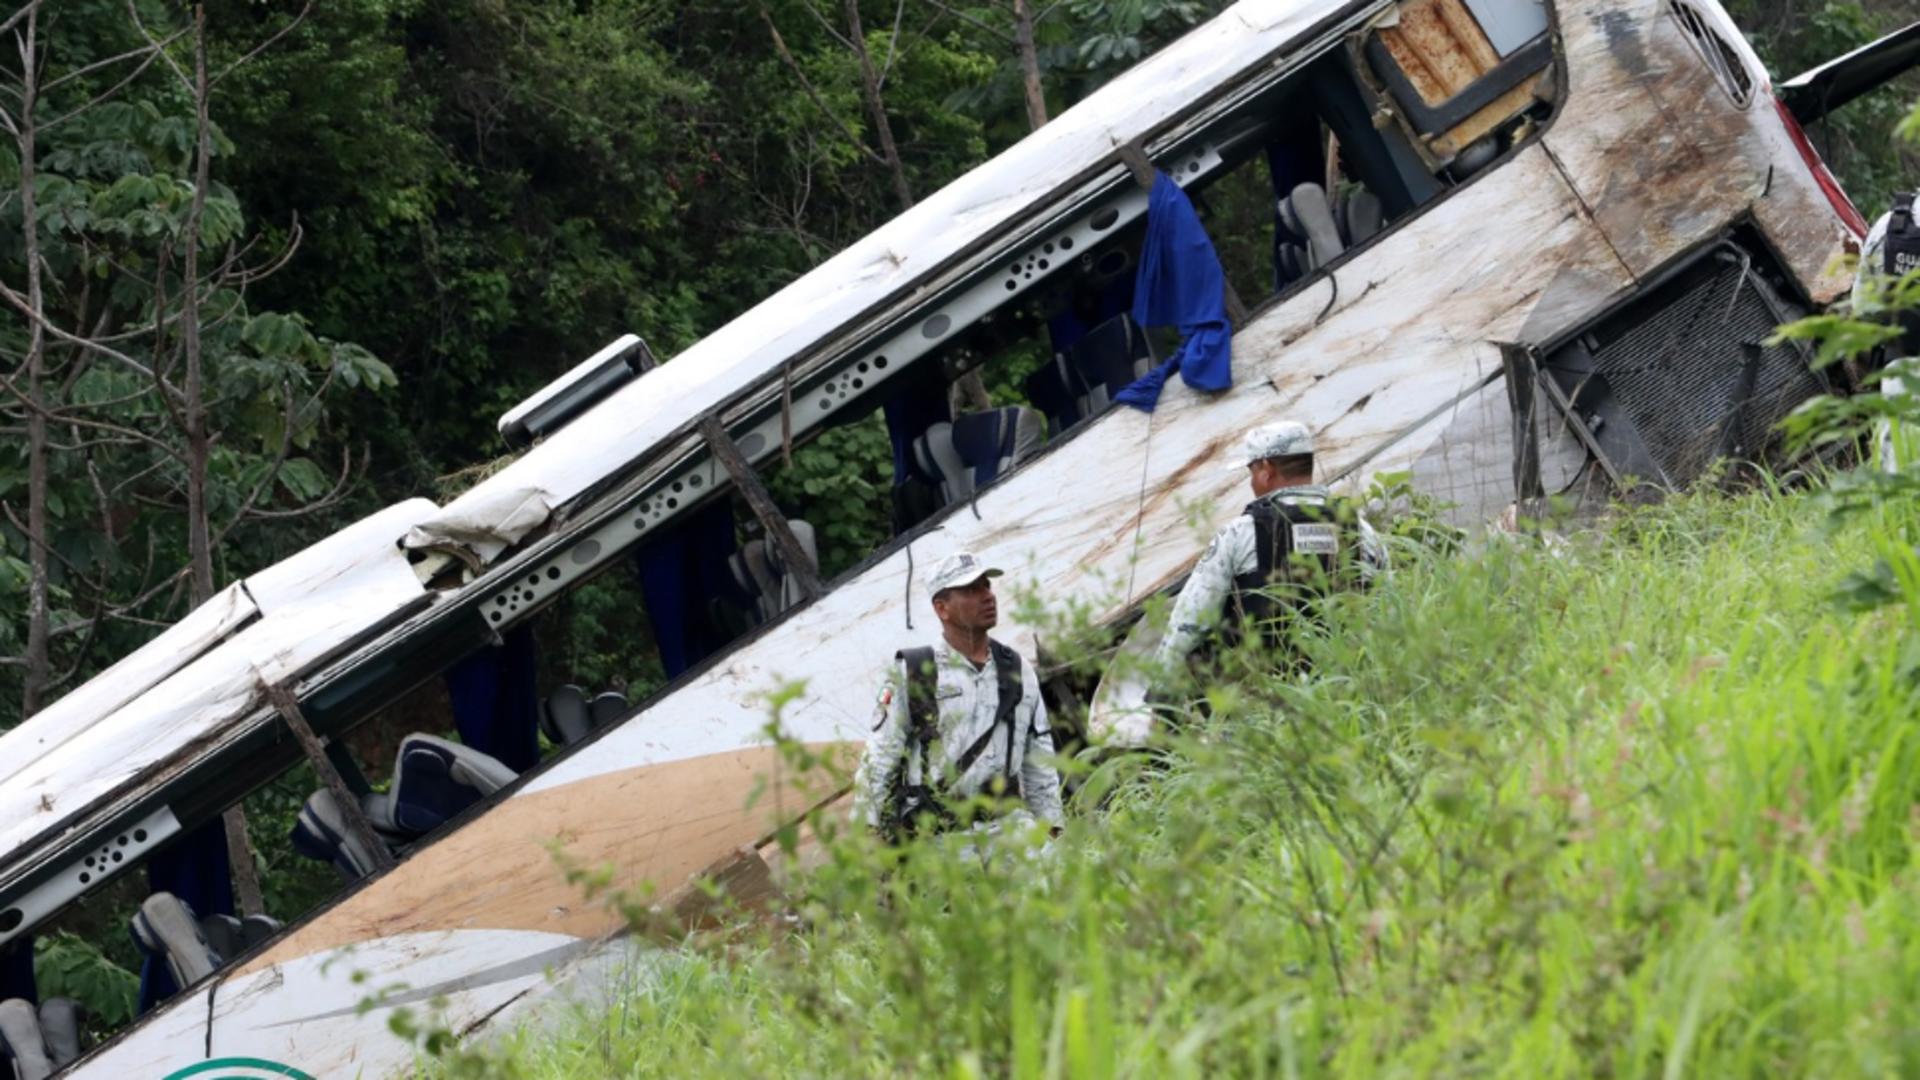 16 morți și 36 de răniți după ce un autobuz a intrat într-un camion, în Mexic. Impact devastator